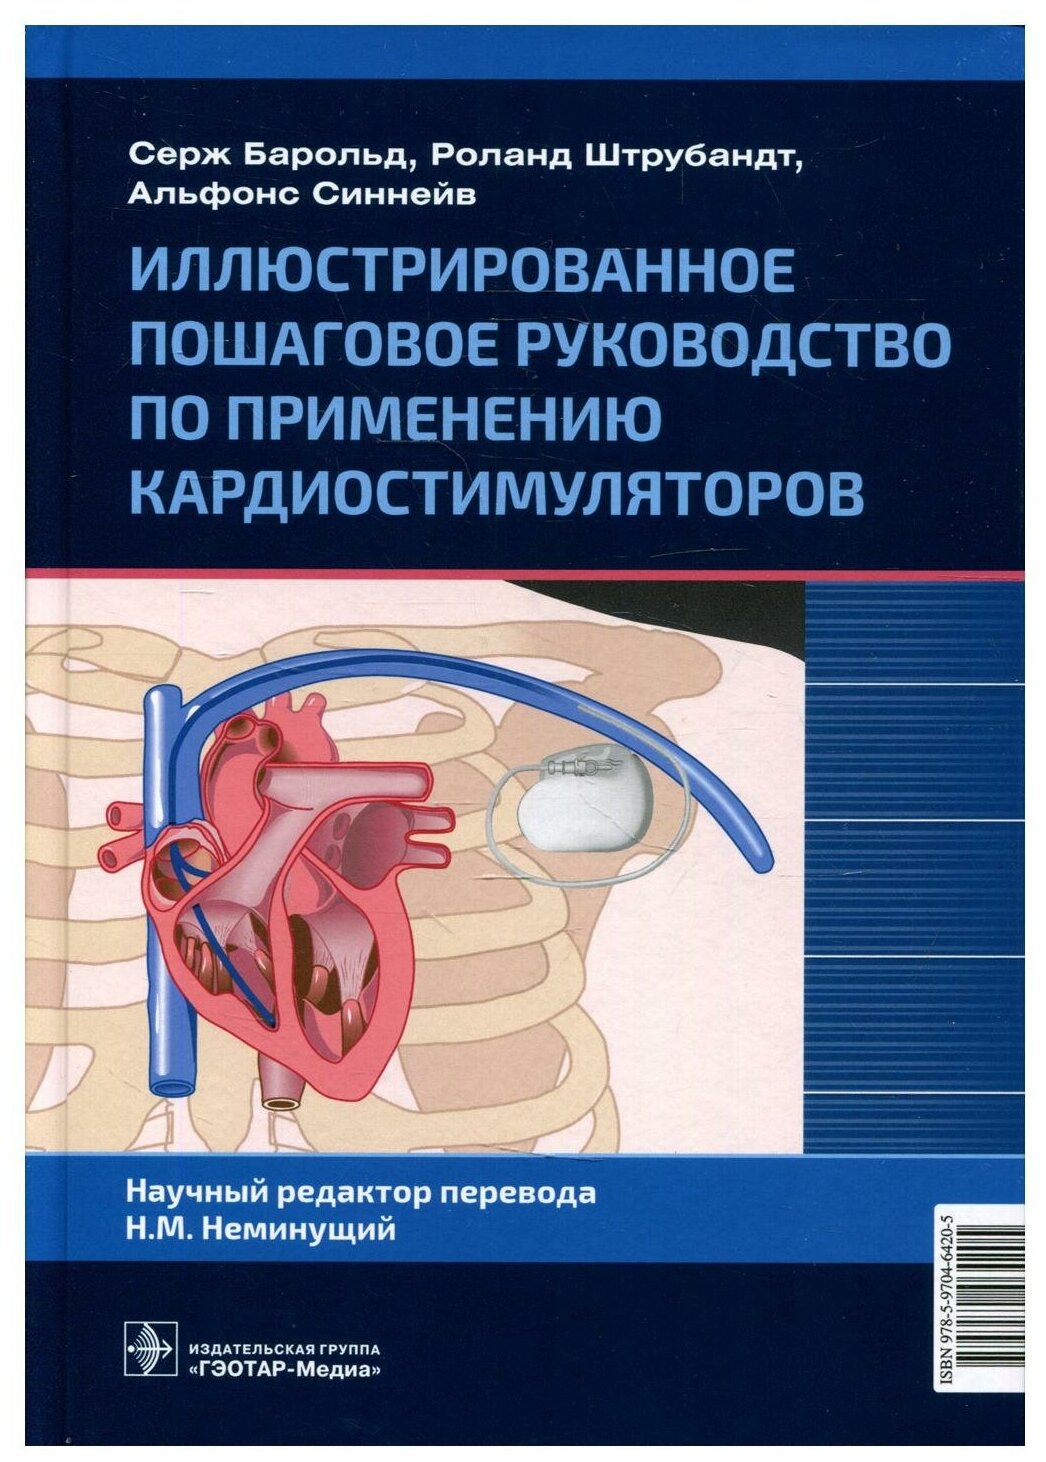 Иллюстрированное пошаговое руководство по применению кардиостимуляторов - фото №1